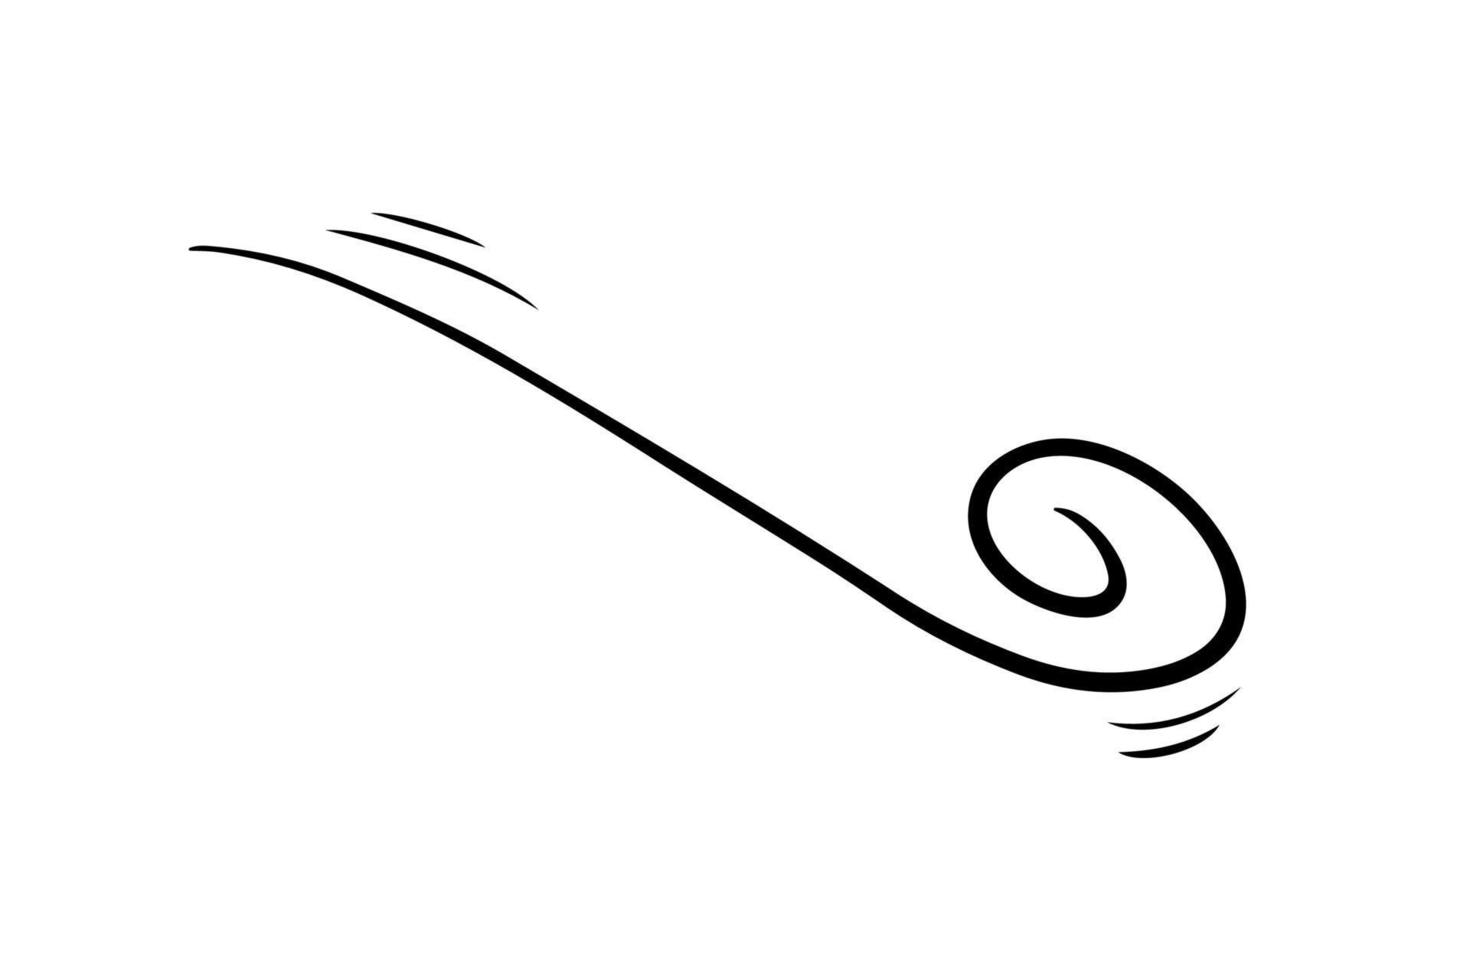 Windschlag im Doodle-Stil, Vektorillustration. Welle kalte Luft bei windigem Wetter. böensymbolumriss für druck und design .isoliertes schwarzes linienelement auf weißem hintergrund vektor